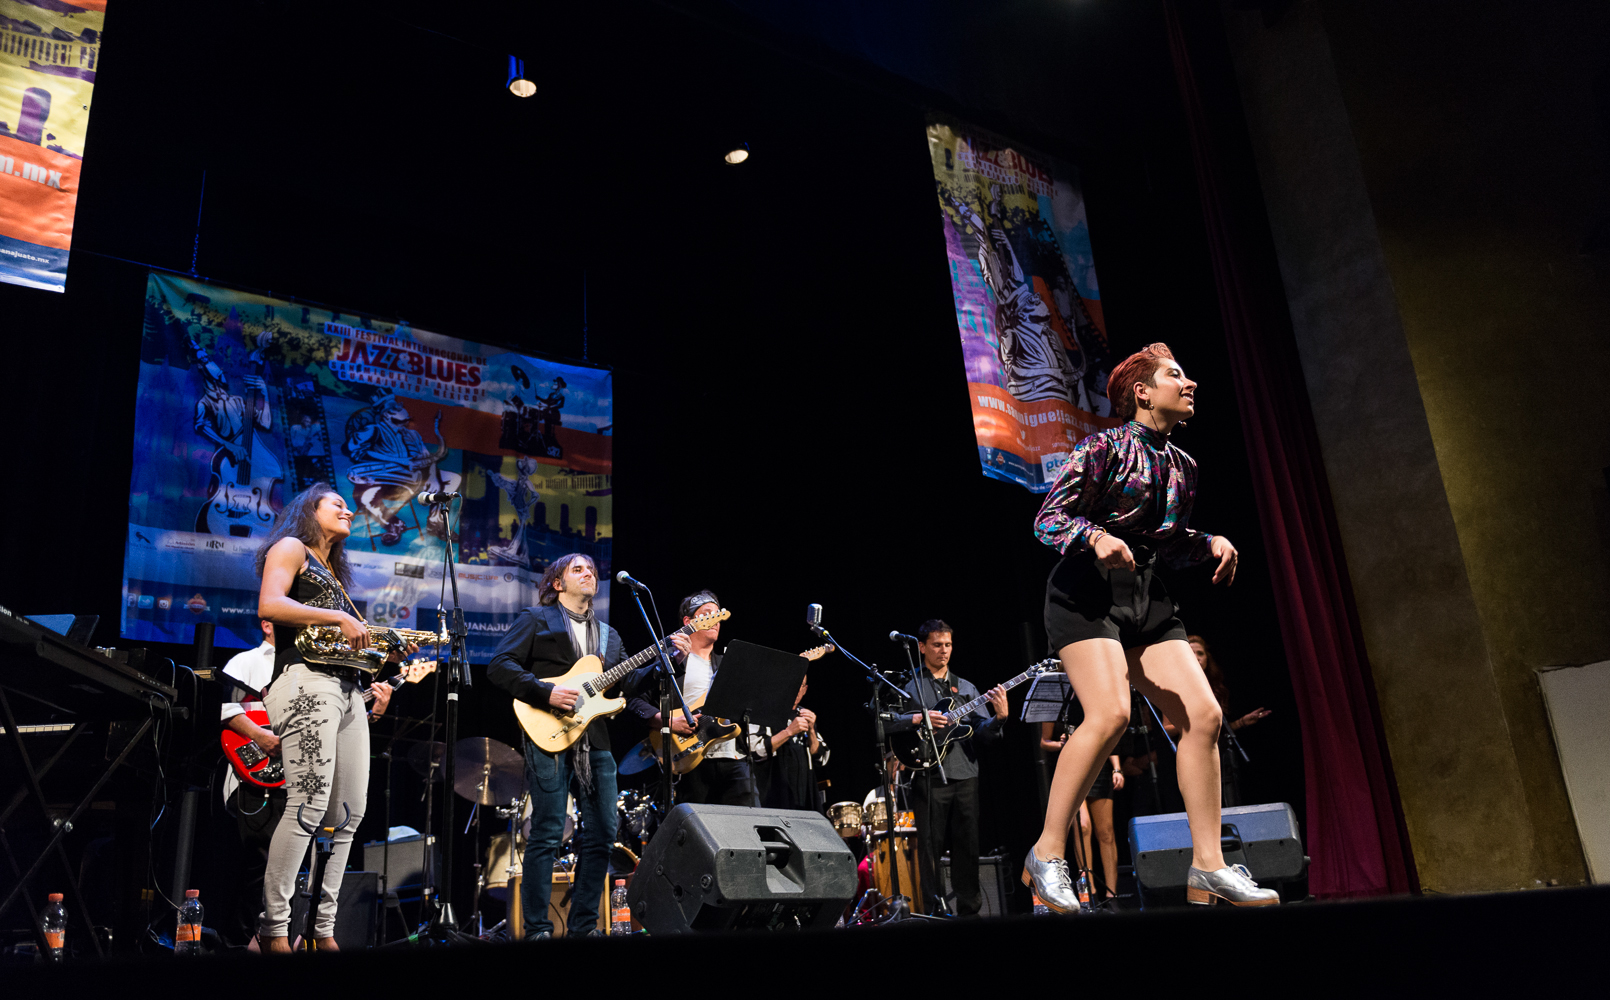 Cierre del Festival Internacional de Jazz y Blues de San Miguel de Allende con Antonio Lozoya J & B Collective e Invitados - Tributo a Eric Clapton, el 19 de noviembre 2017 en el Teatro Ángela Peralta.